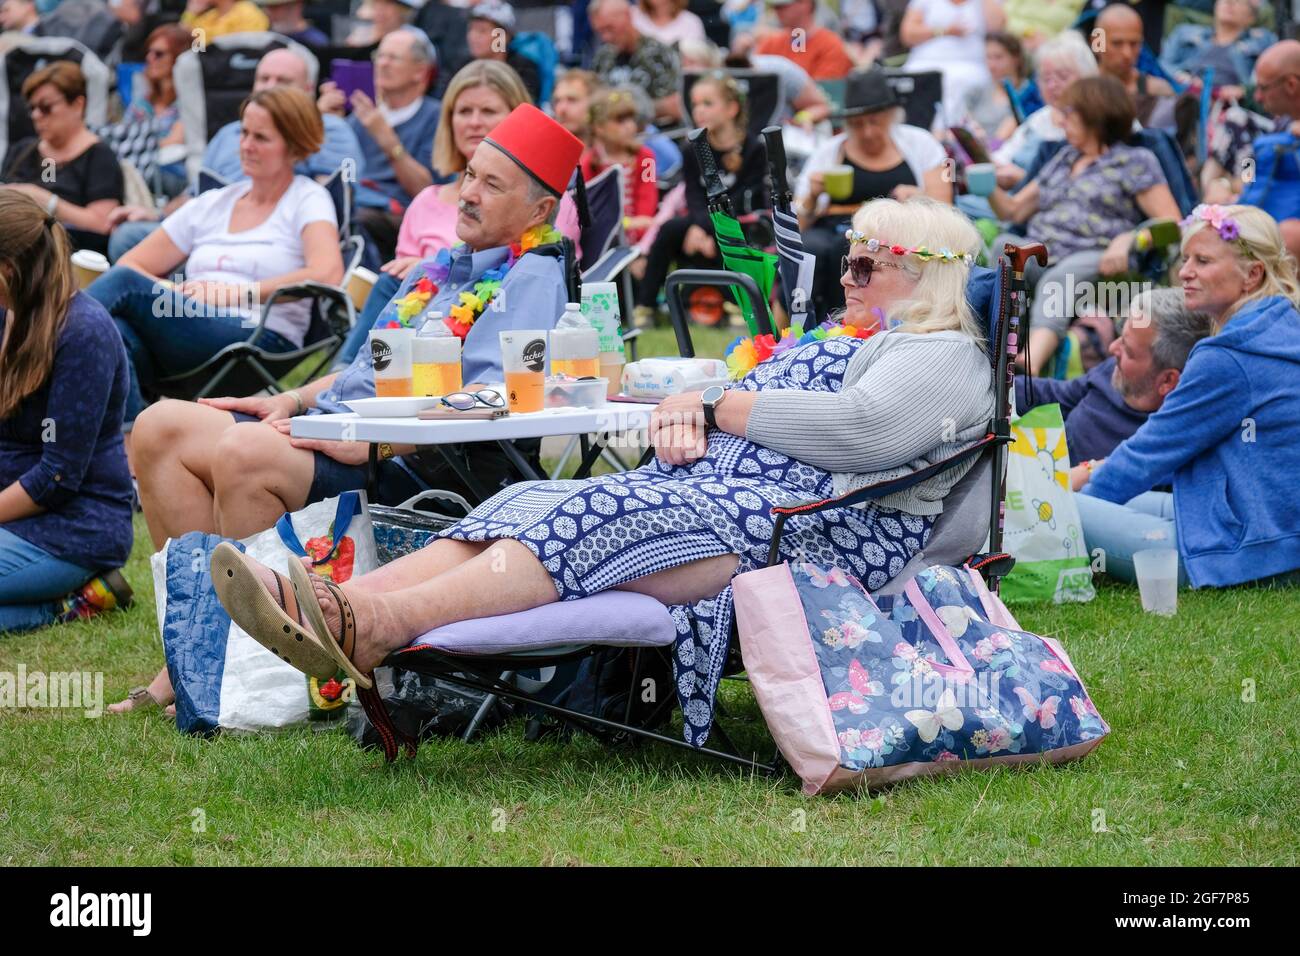 Fans enjoying the return of live music at Weyfest Music Festival, Farnham, UK. August 22, 2021 Stock Photo